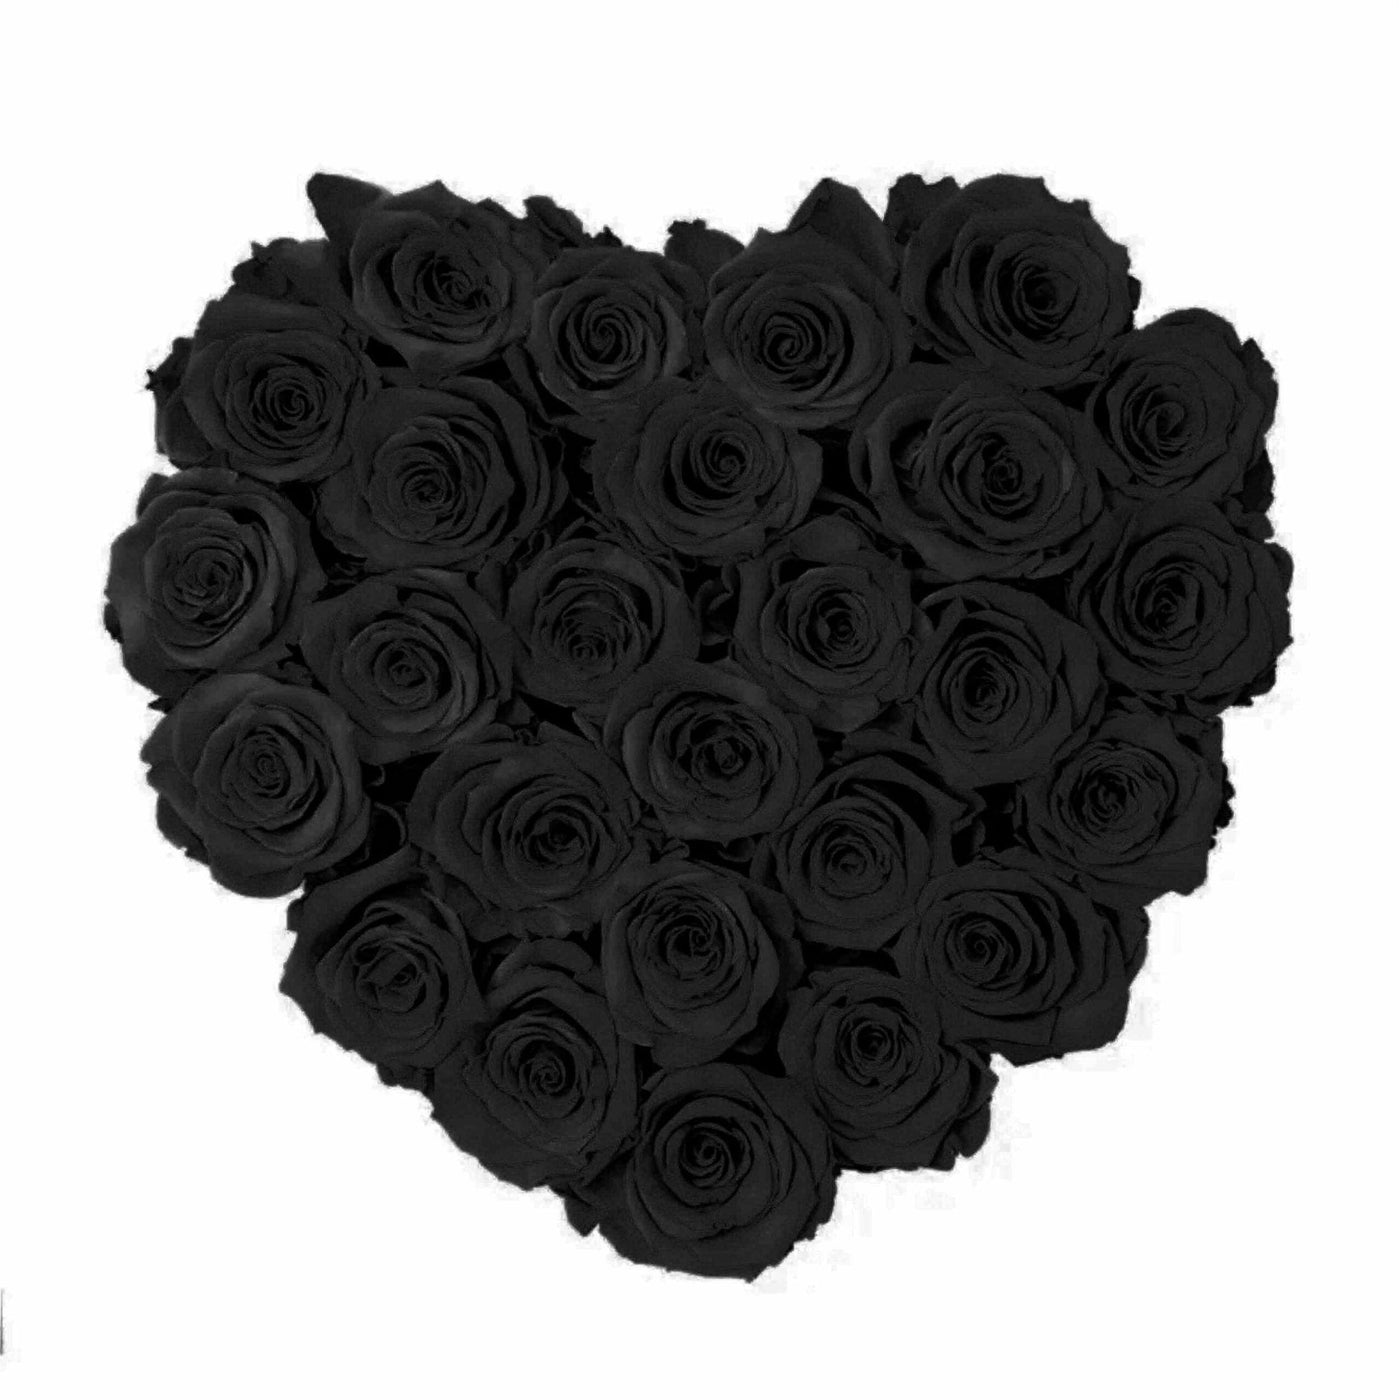 Large Black Heart Box with Velvet Black Roses